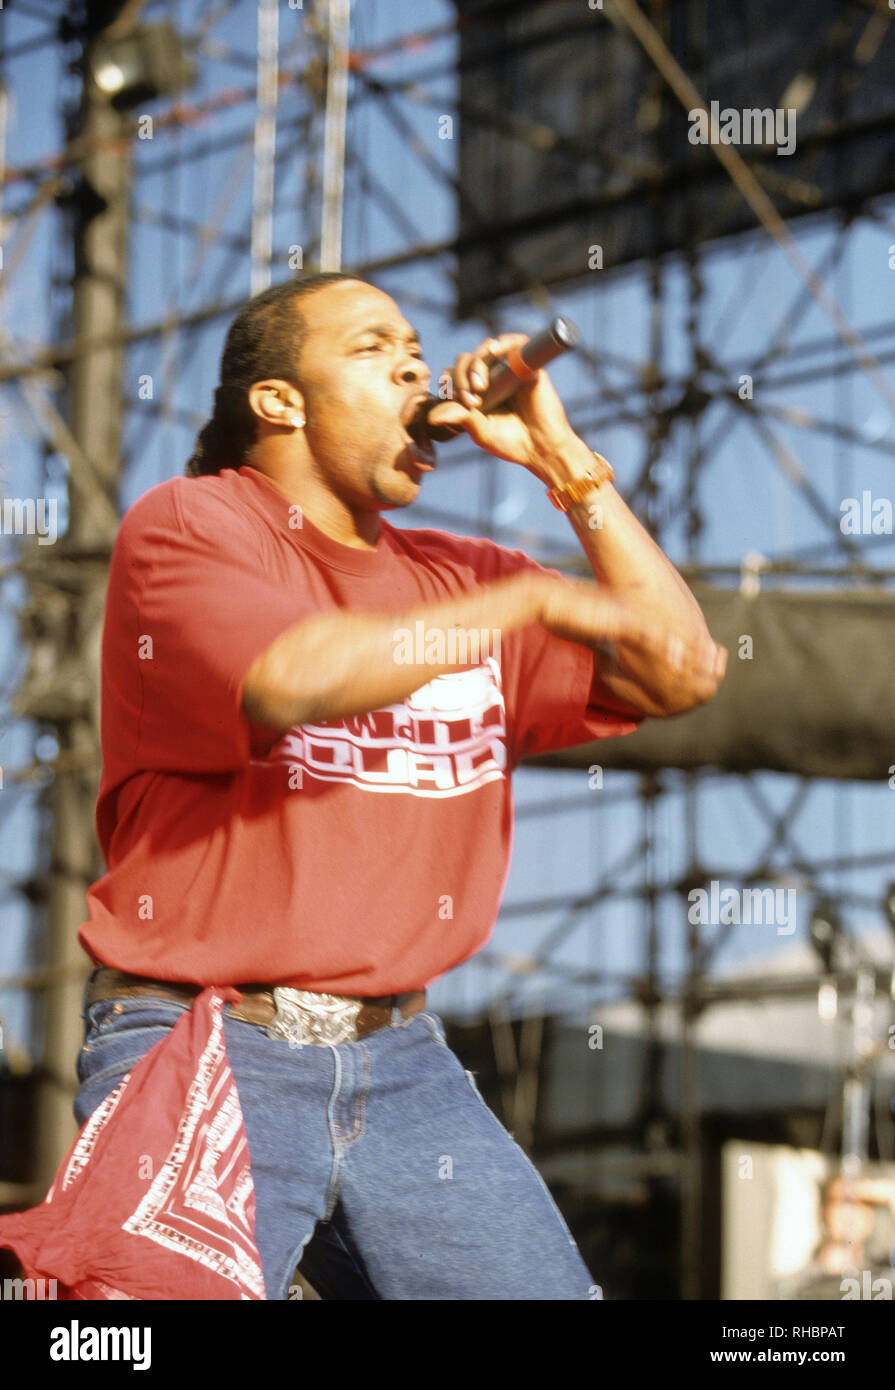 BUSTA RHYMES amerikanischen Rapper im August 2002. Foto: Jeffrey Mayer  Stockfotografie - Alamy